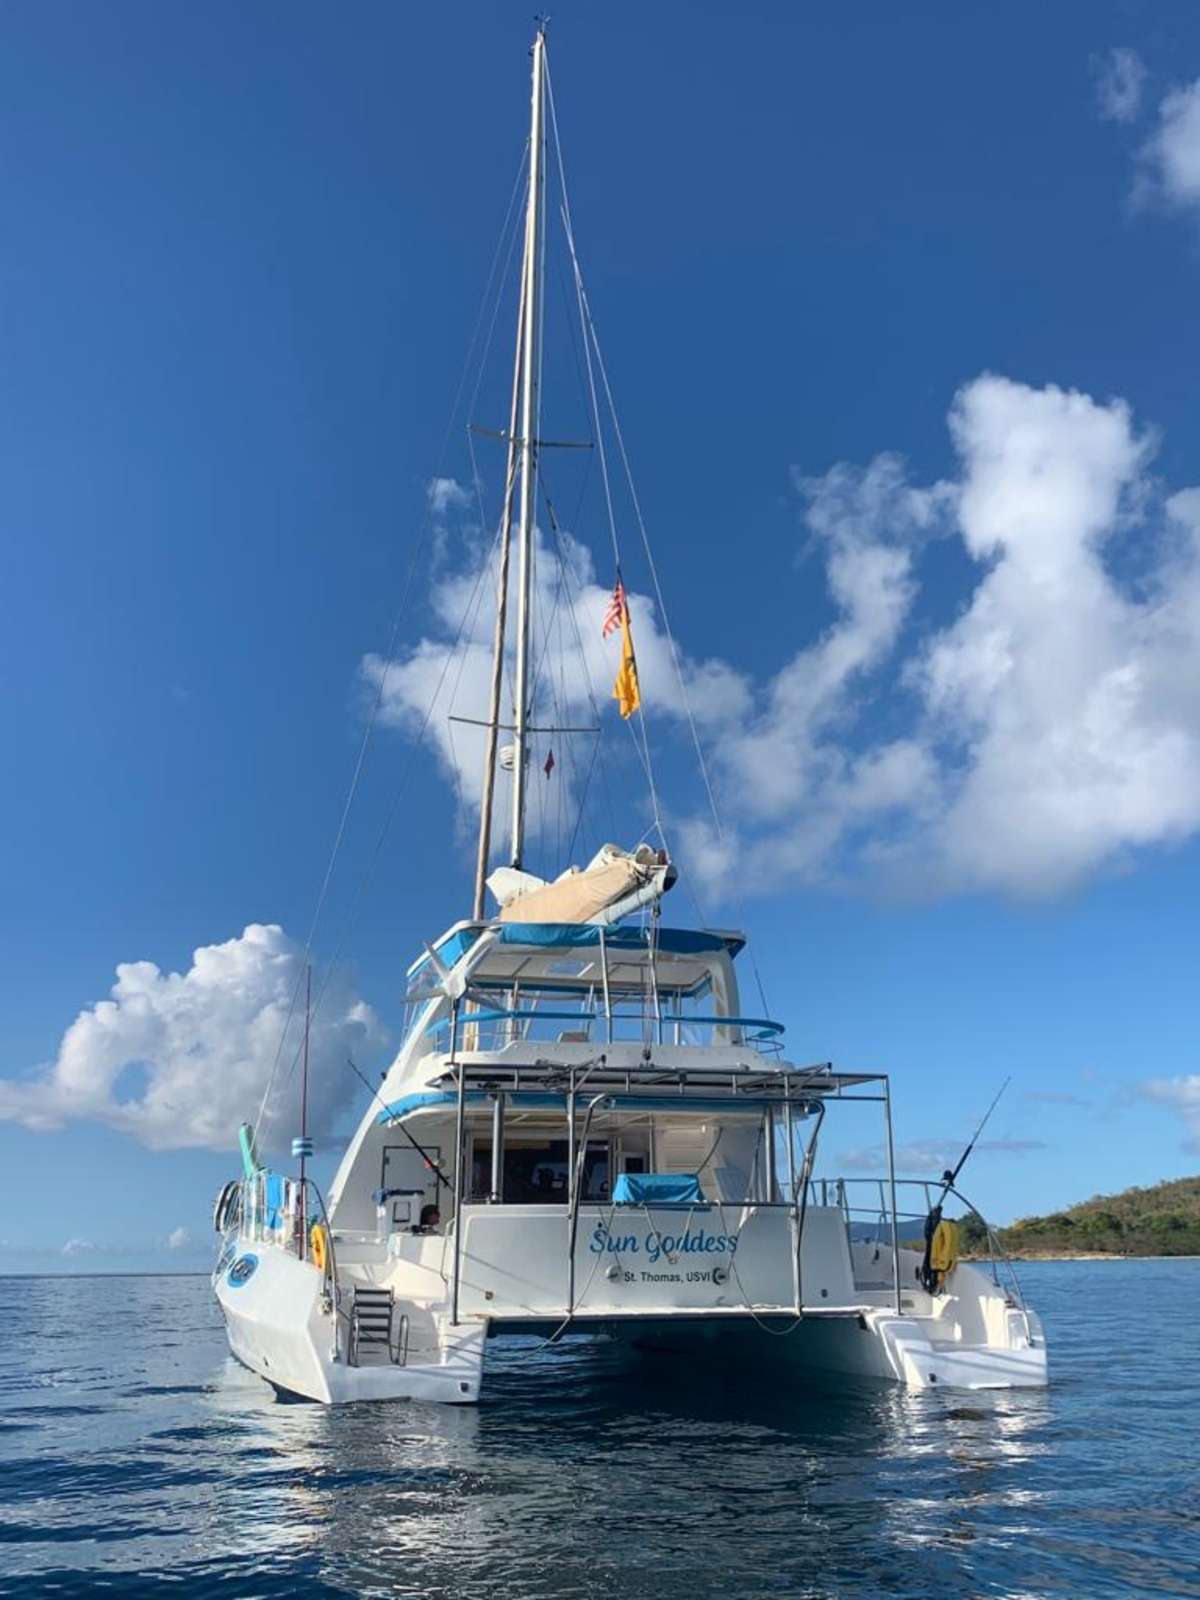 Sun Goddess - Yacht Charter Panama & Boat hire in Caribbean 1